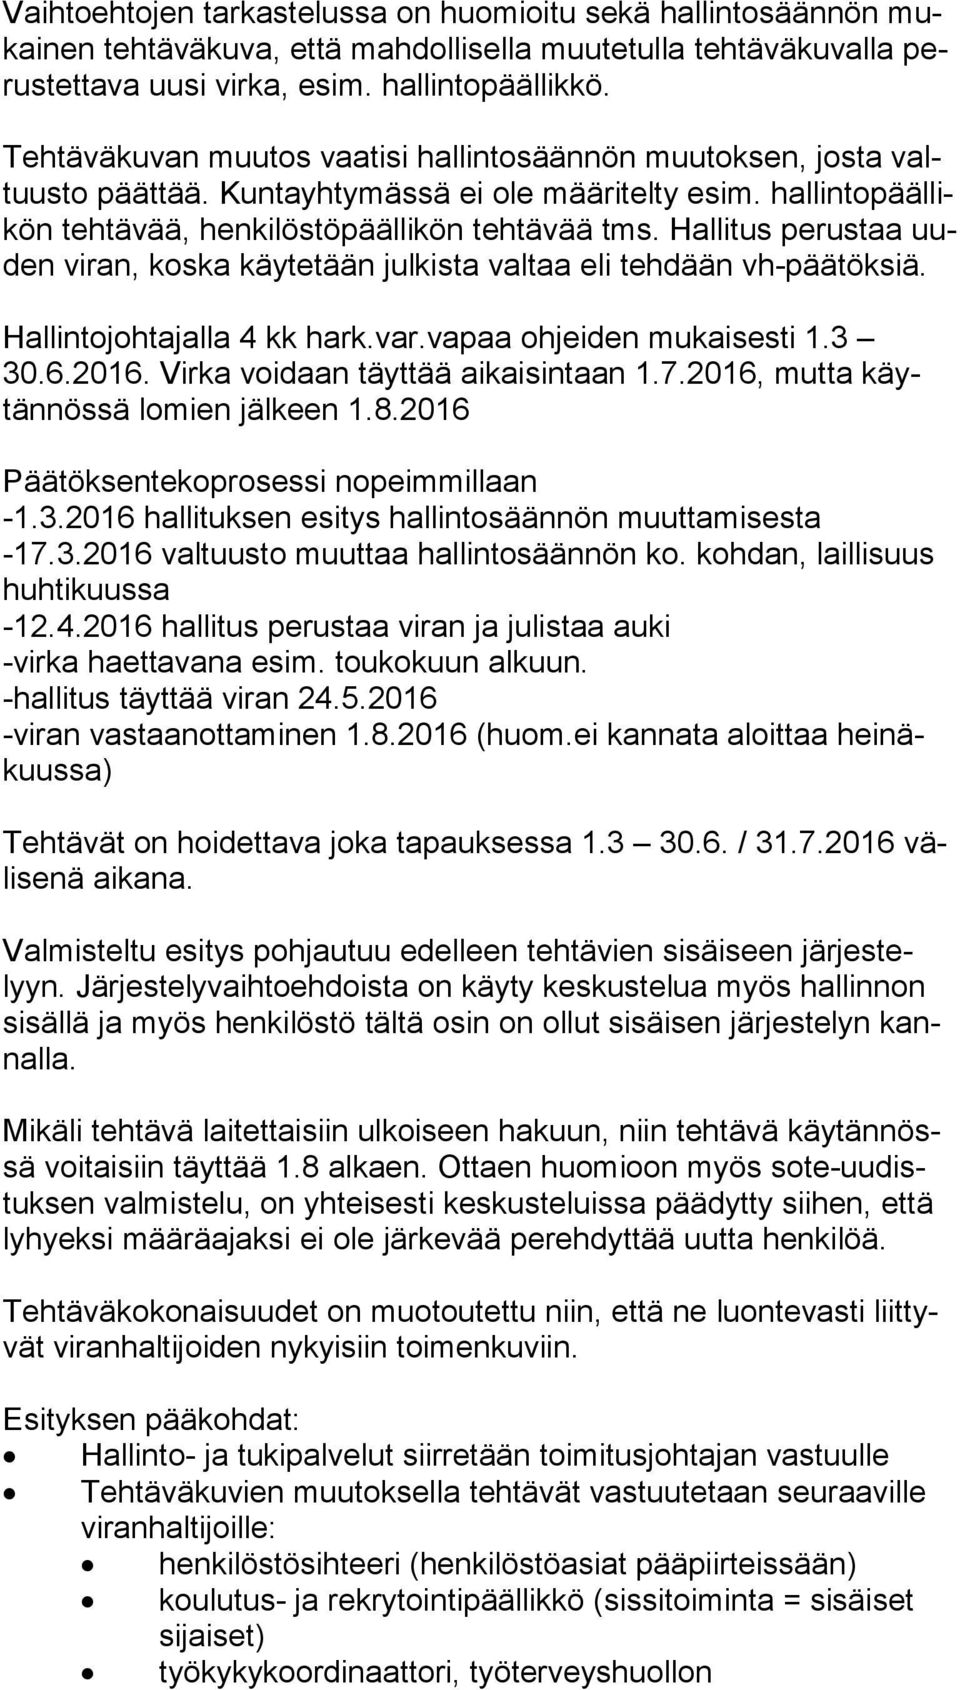 Hallitus perustaa uuden viran, koska käytetään julkista valtaa eli tehdään vh-pää tök siä. Hallintojohtajalla 4 kk hark.var.vapaa ohjeiden mukaisesti 1.3 30.6.2016.